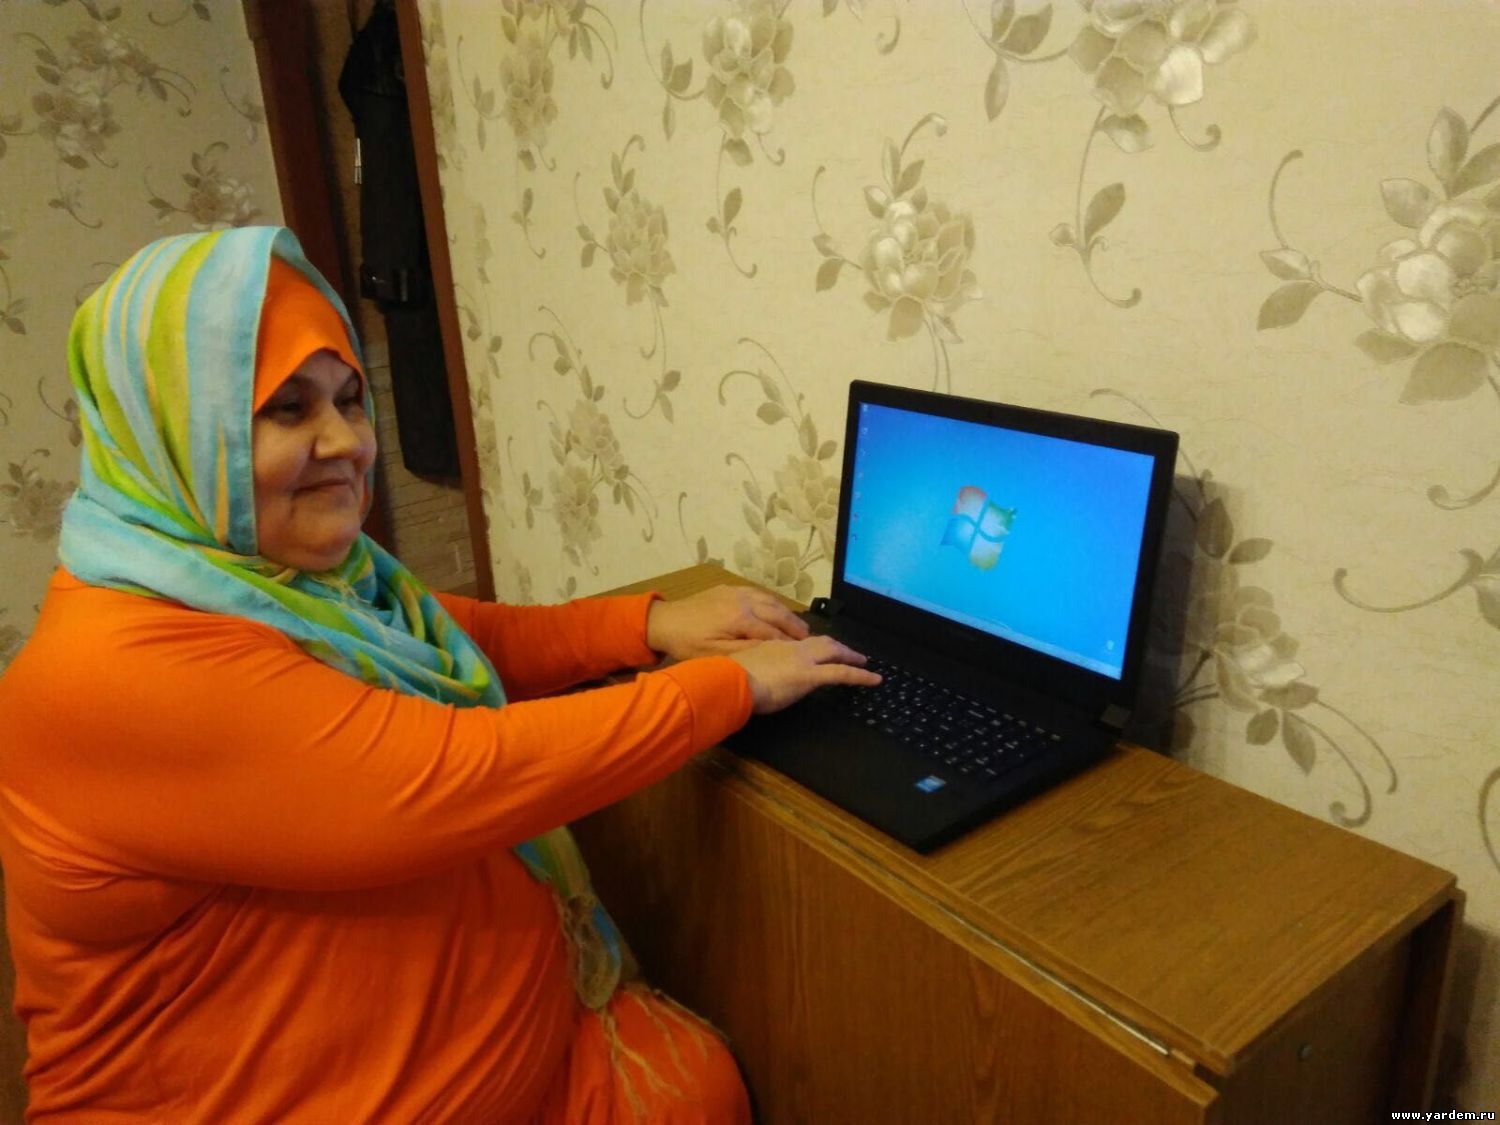 Муфтий Гайнутдин подарил женщине-инвалиду компьютер, оснащенный специальной программой для незрячих